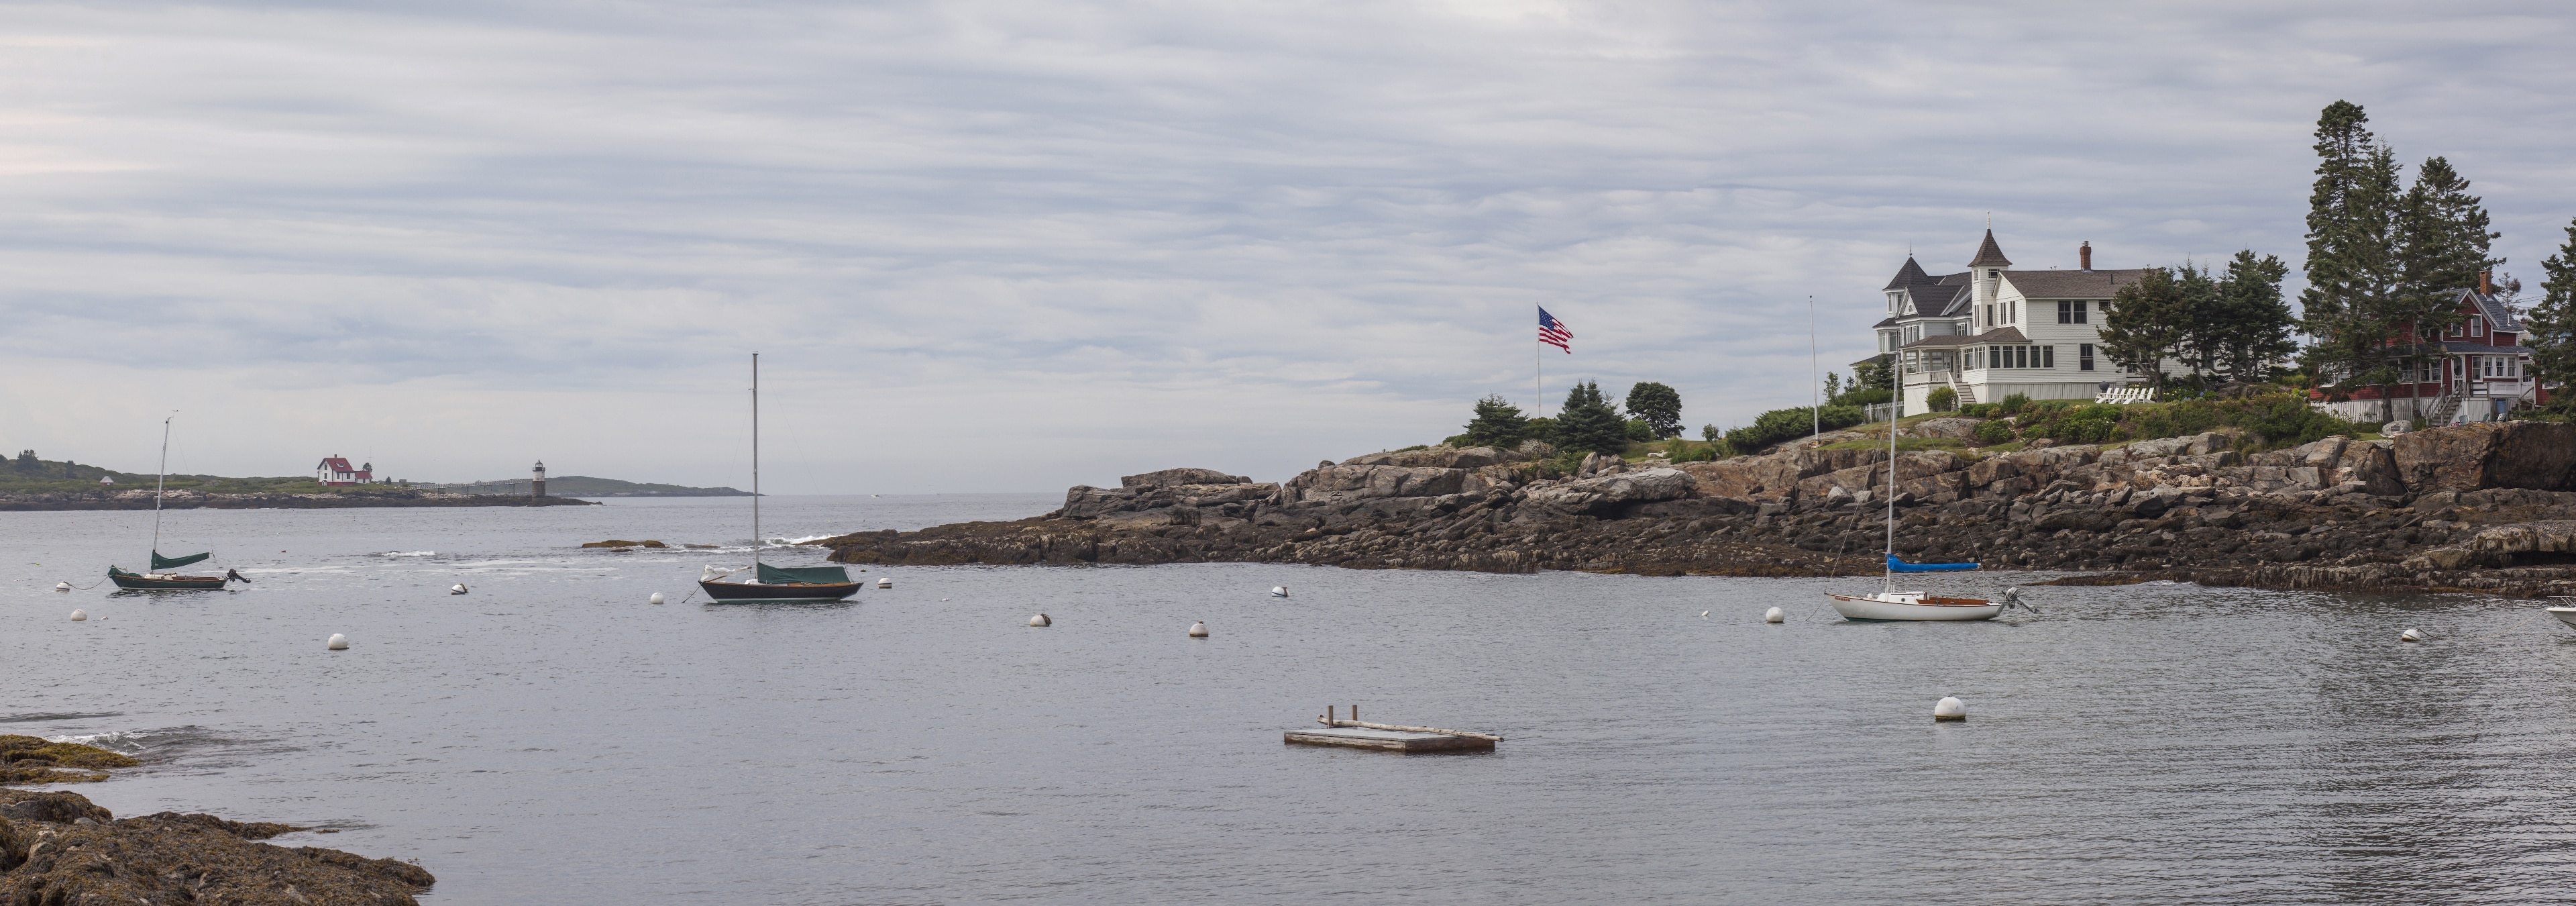 Ocean Point, East Boothbay, Maine, États-Unis d'Amérique